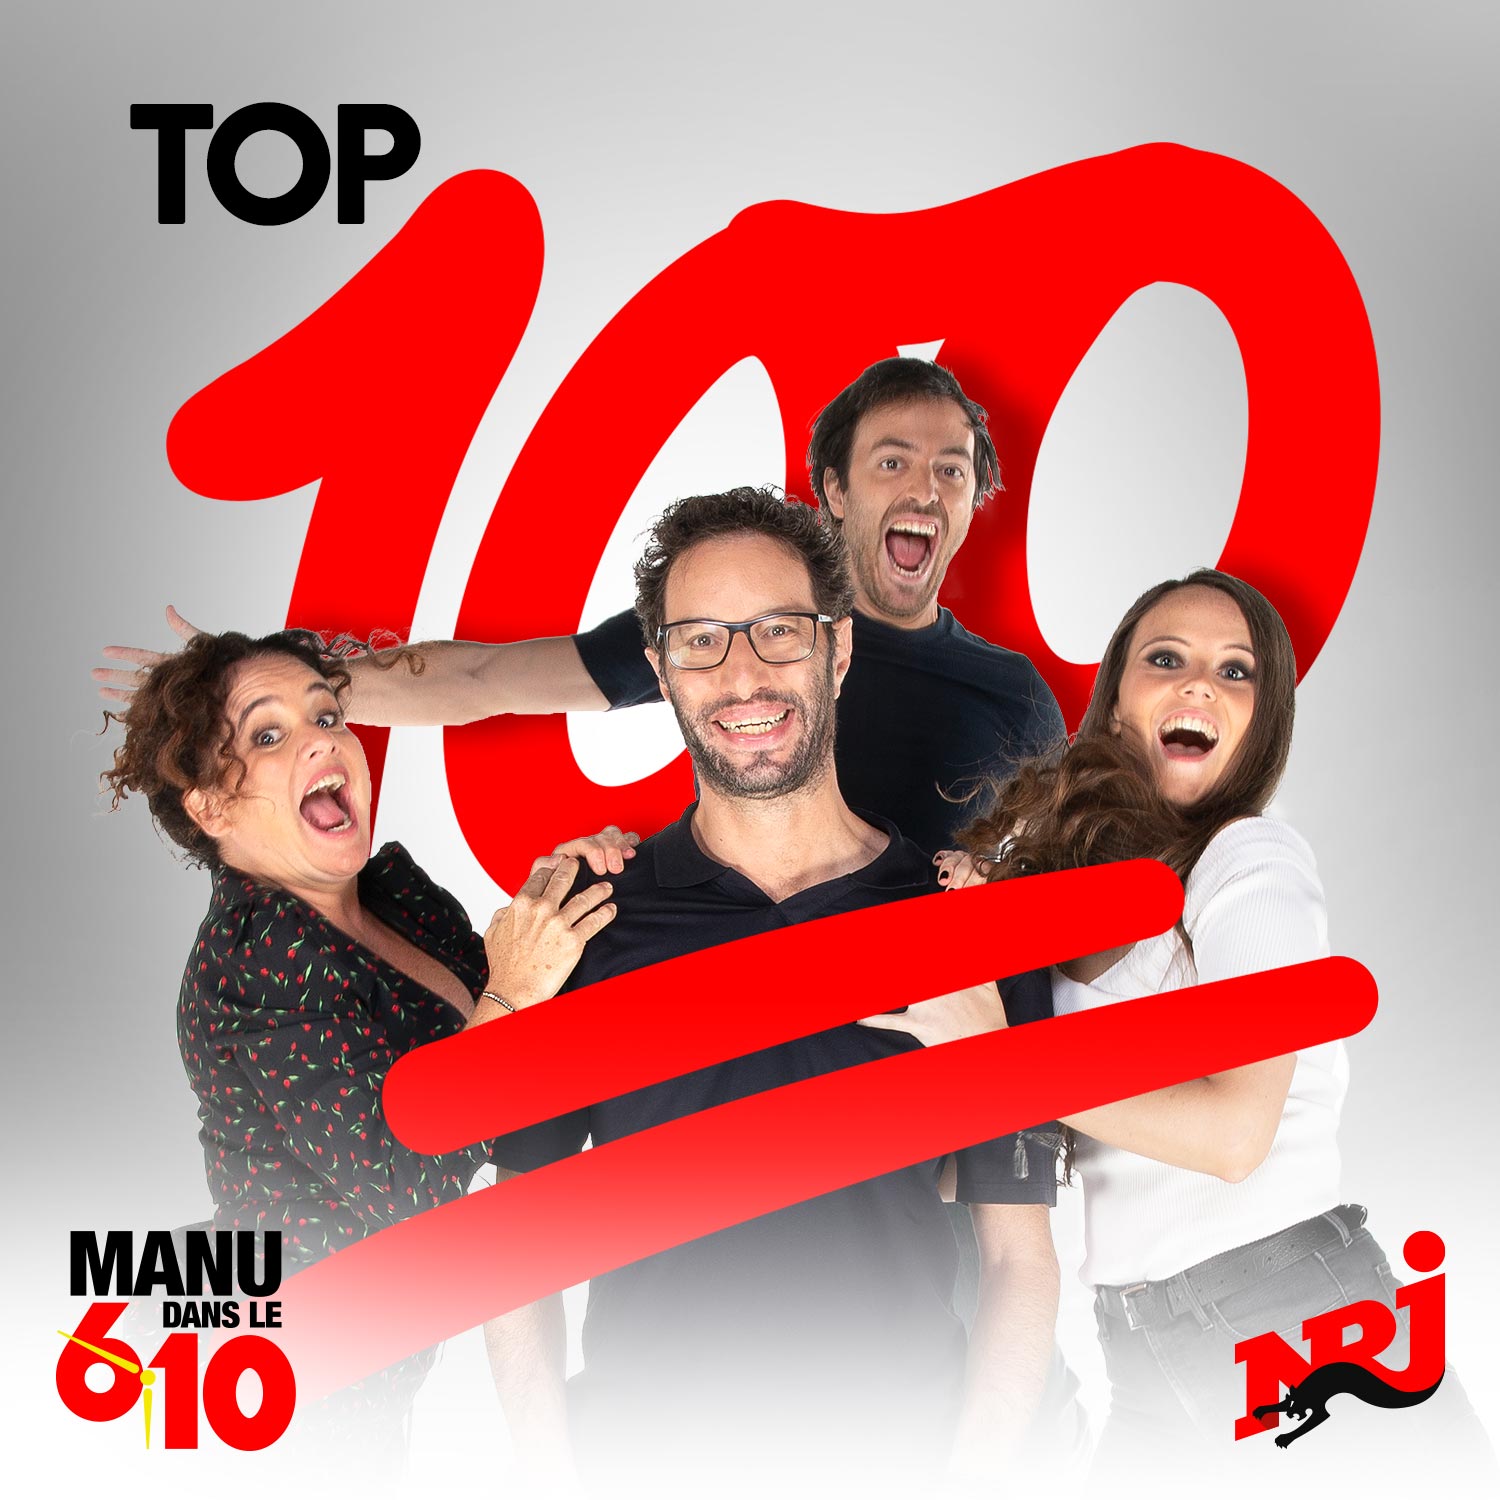 Aude Manu Dans Le 6 10 Manu dans le 6/10 sur NRJ: Vidéos, actus et podcasts de l'émission